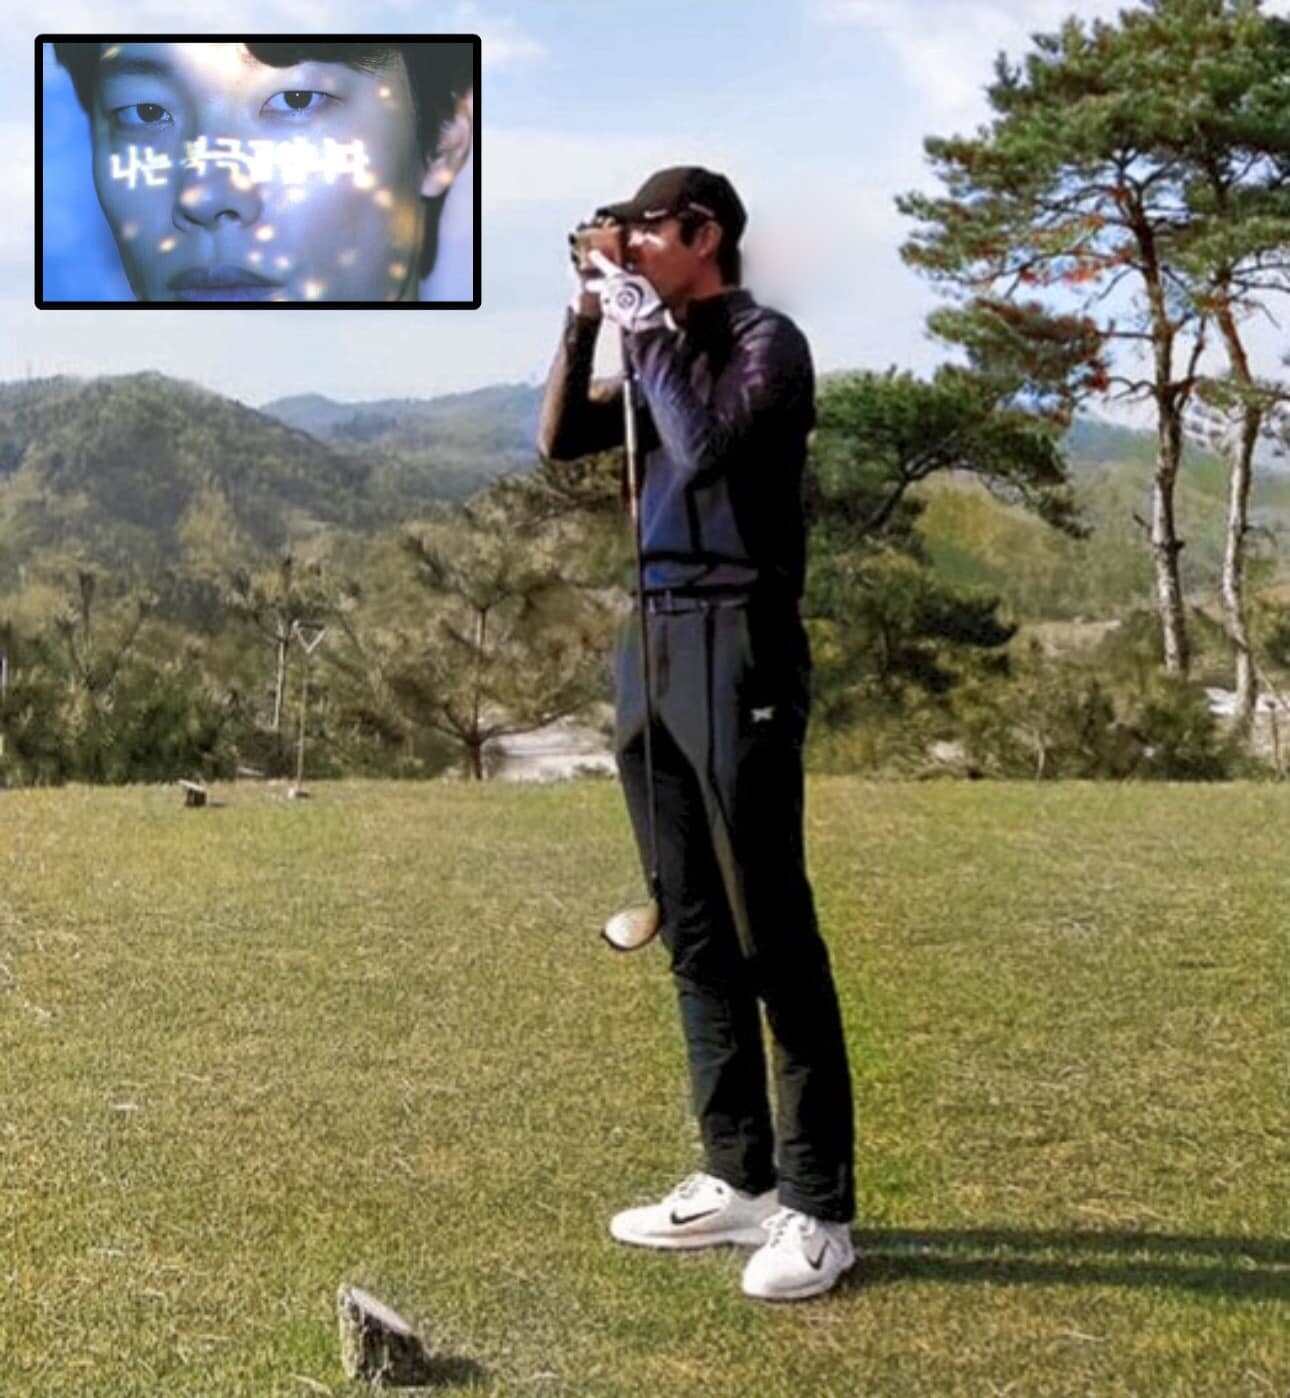 Ryu Jun Yeol là đại sứ bảo vệ môi trường nhưng đam mê chơi golf - môn thể thao gây tranh cãi vì hủy hoại môi trường. Ảnh: Naver